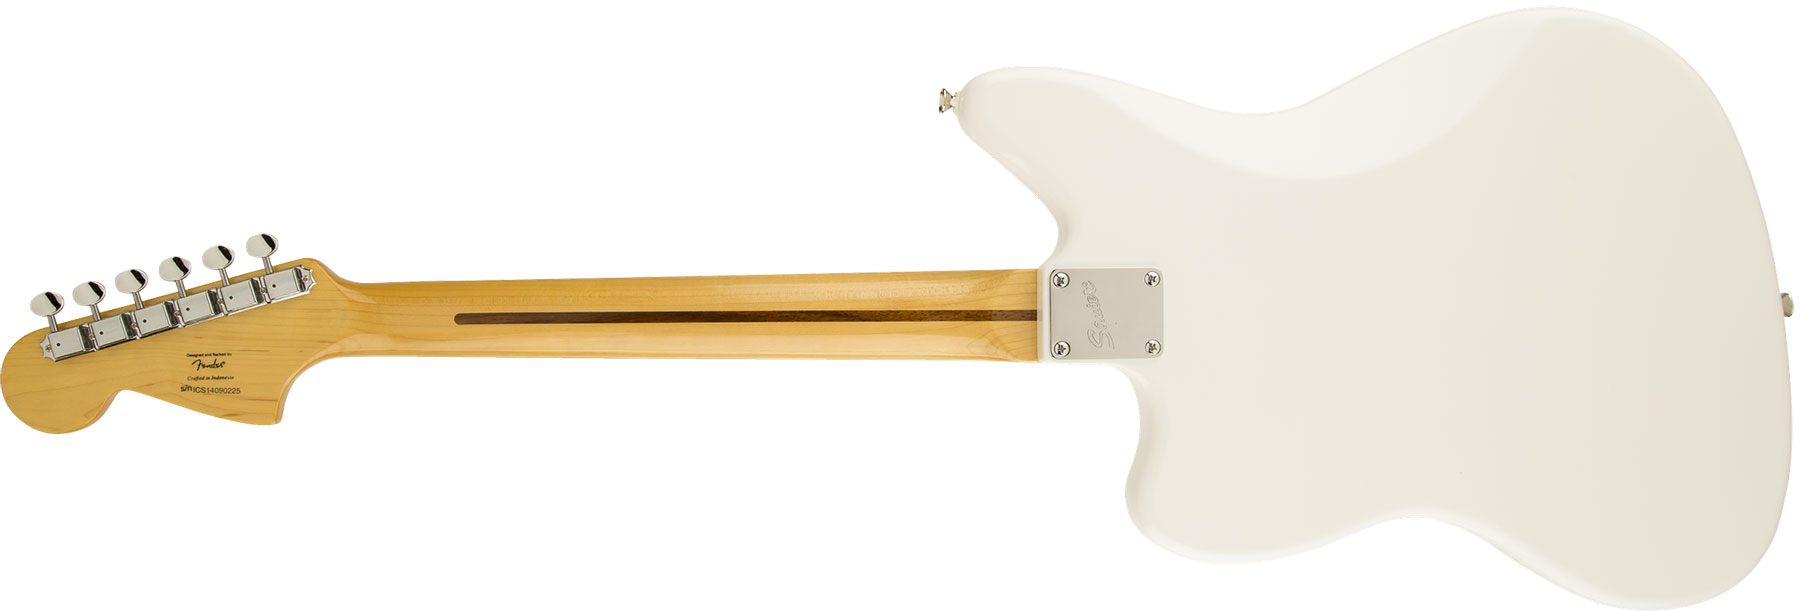 Squier Jaguar Vintage Modified Ss Lau - Olympic White - Retro rock electric guitar - Variation 1